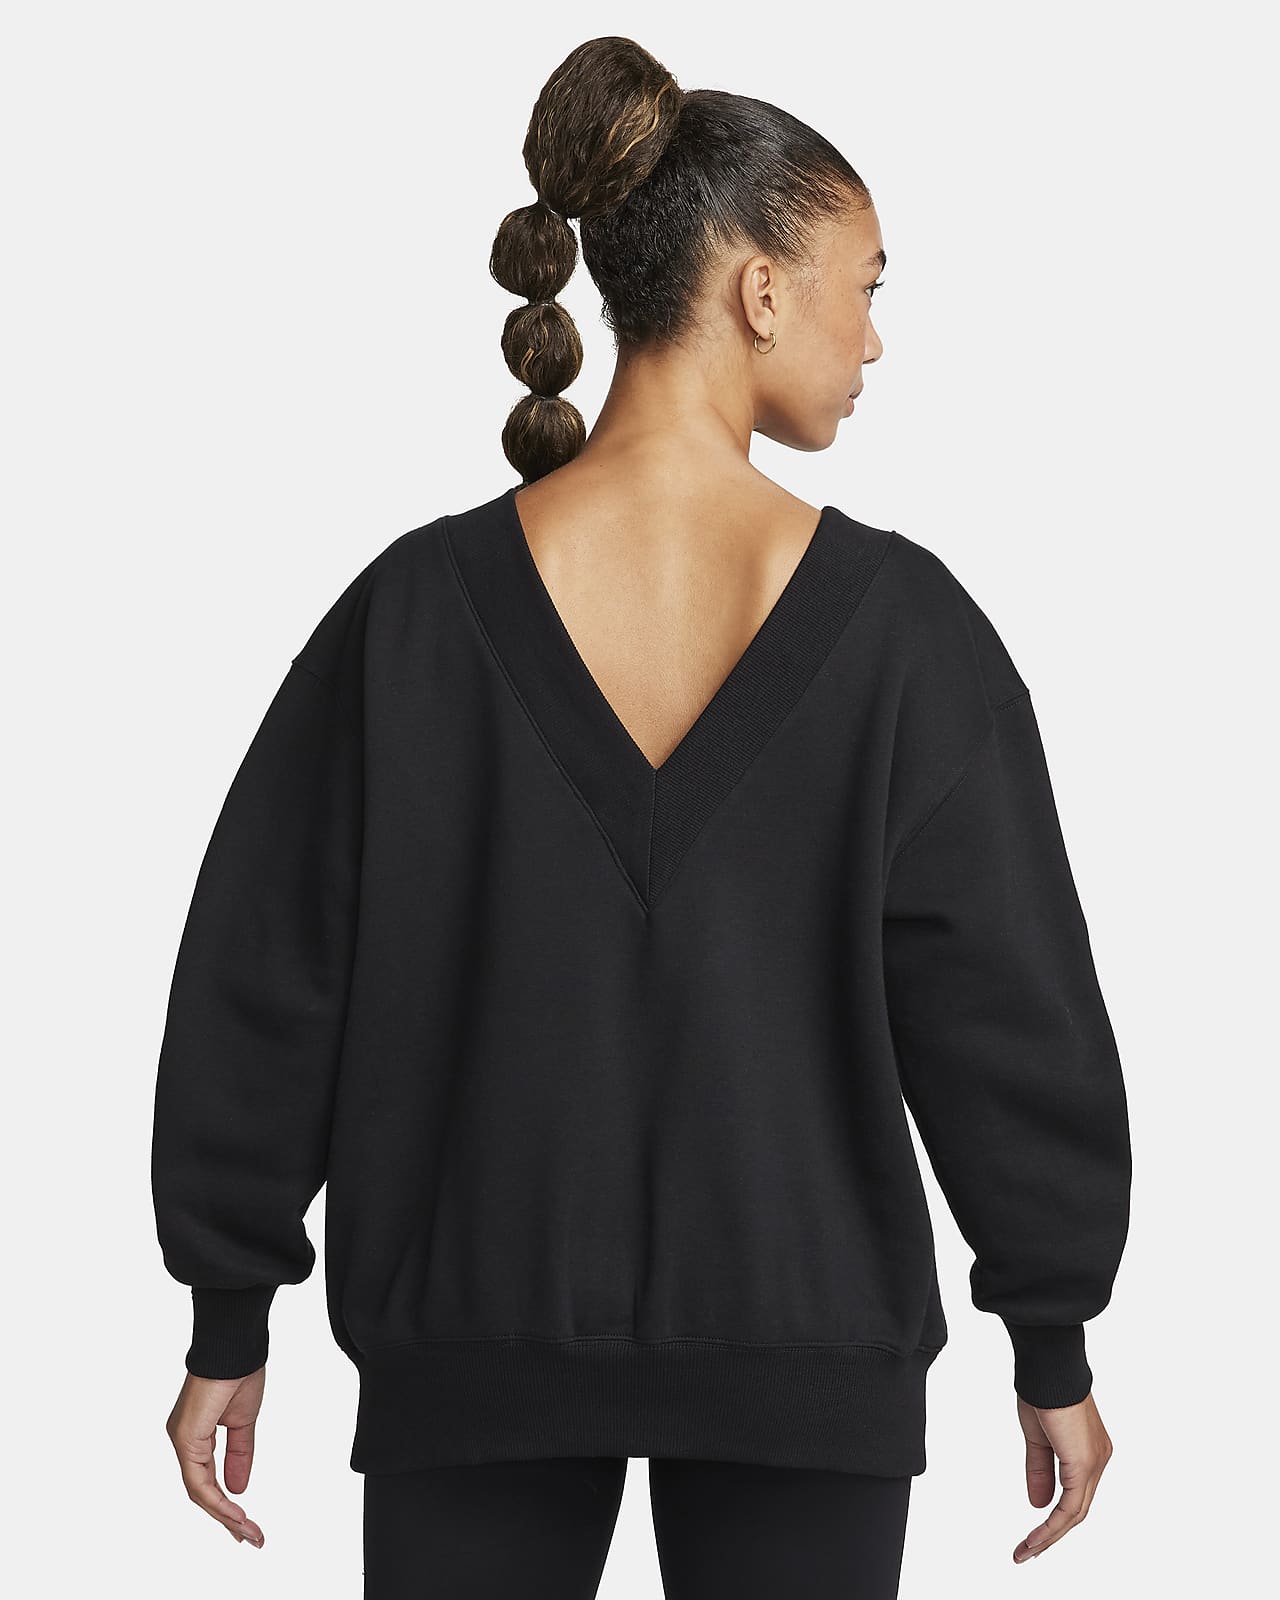 Nike Sportswear Phoenix Fleece Women's Oversized V-Neck Sweatshirt.